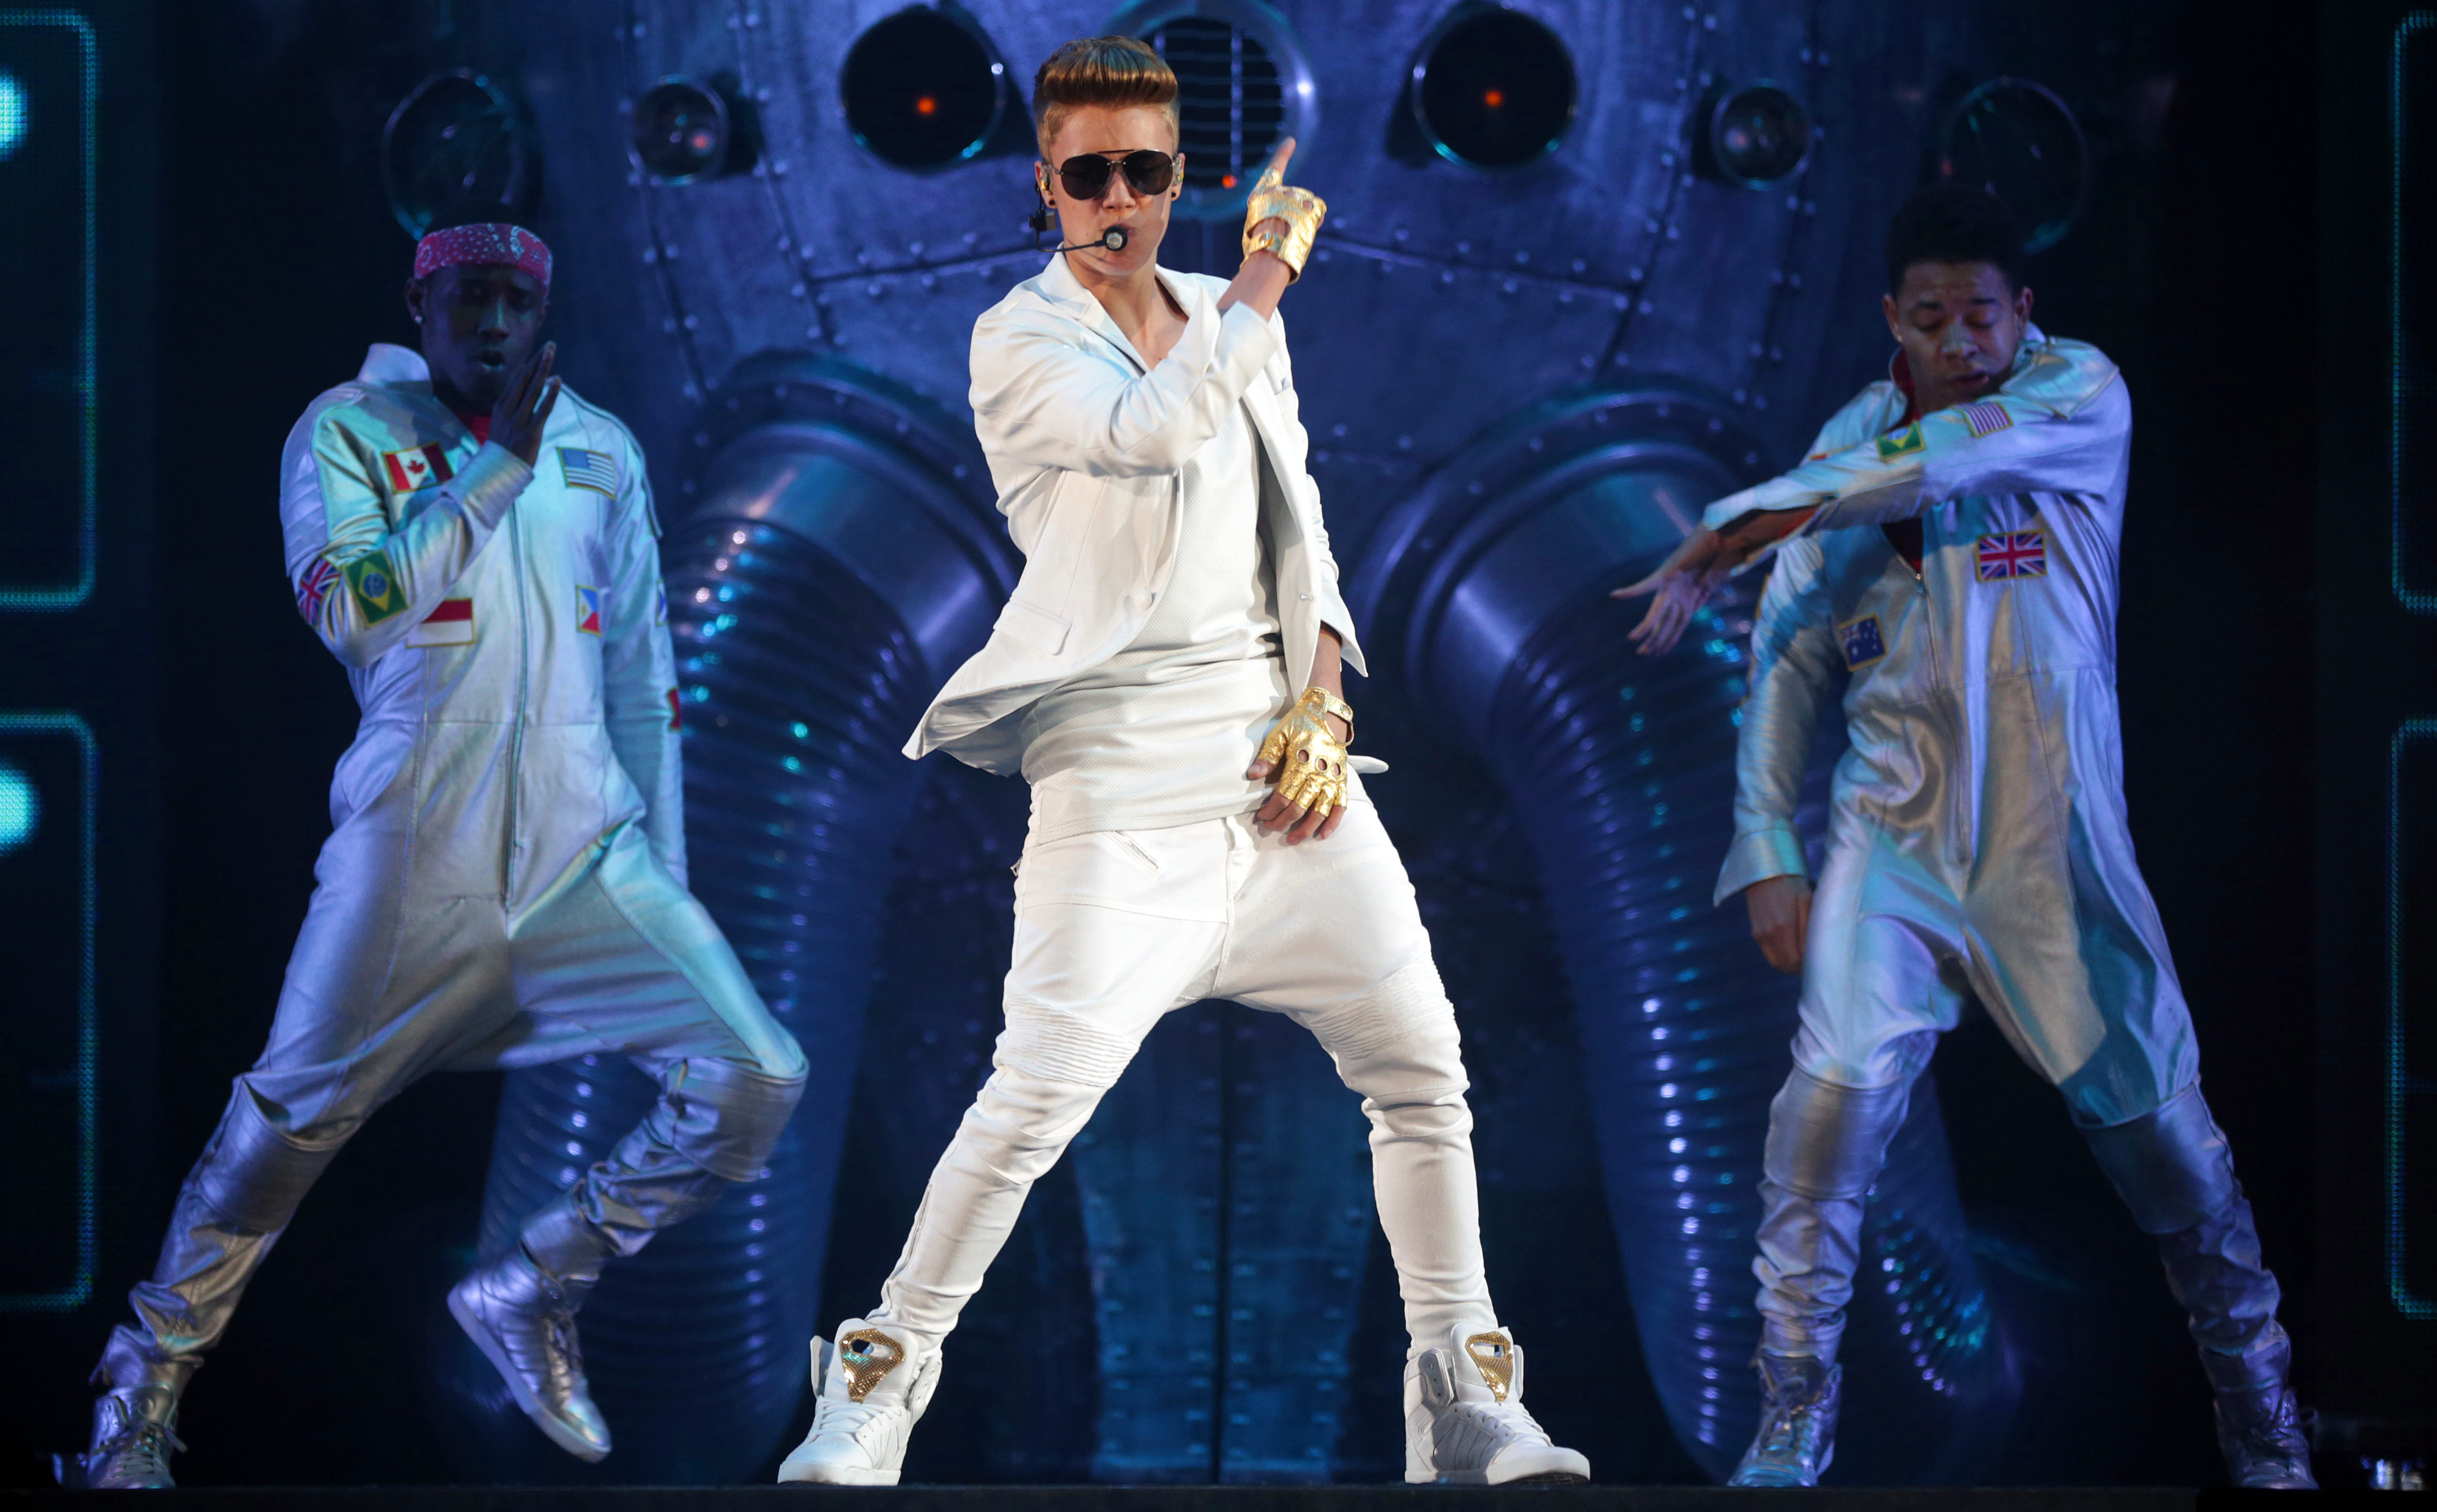 Justin Bieber Best Wallpaper , HD Wallpaper & Backgrounds